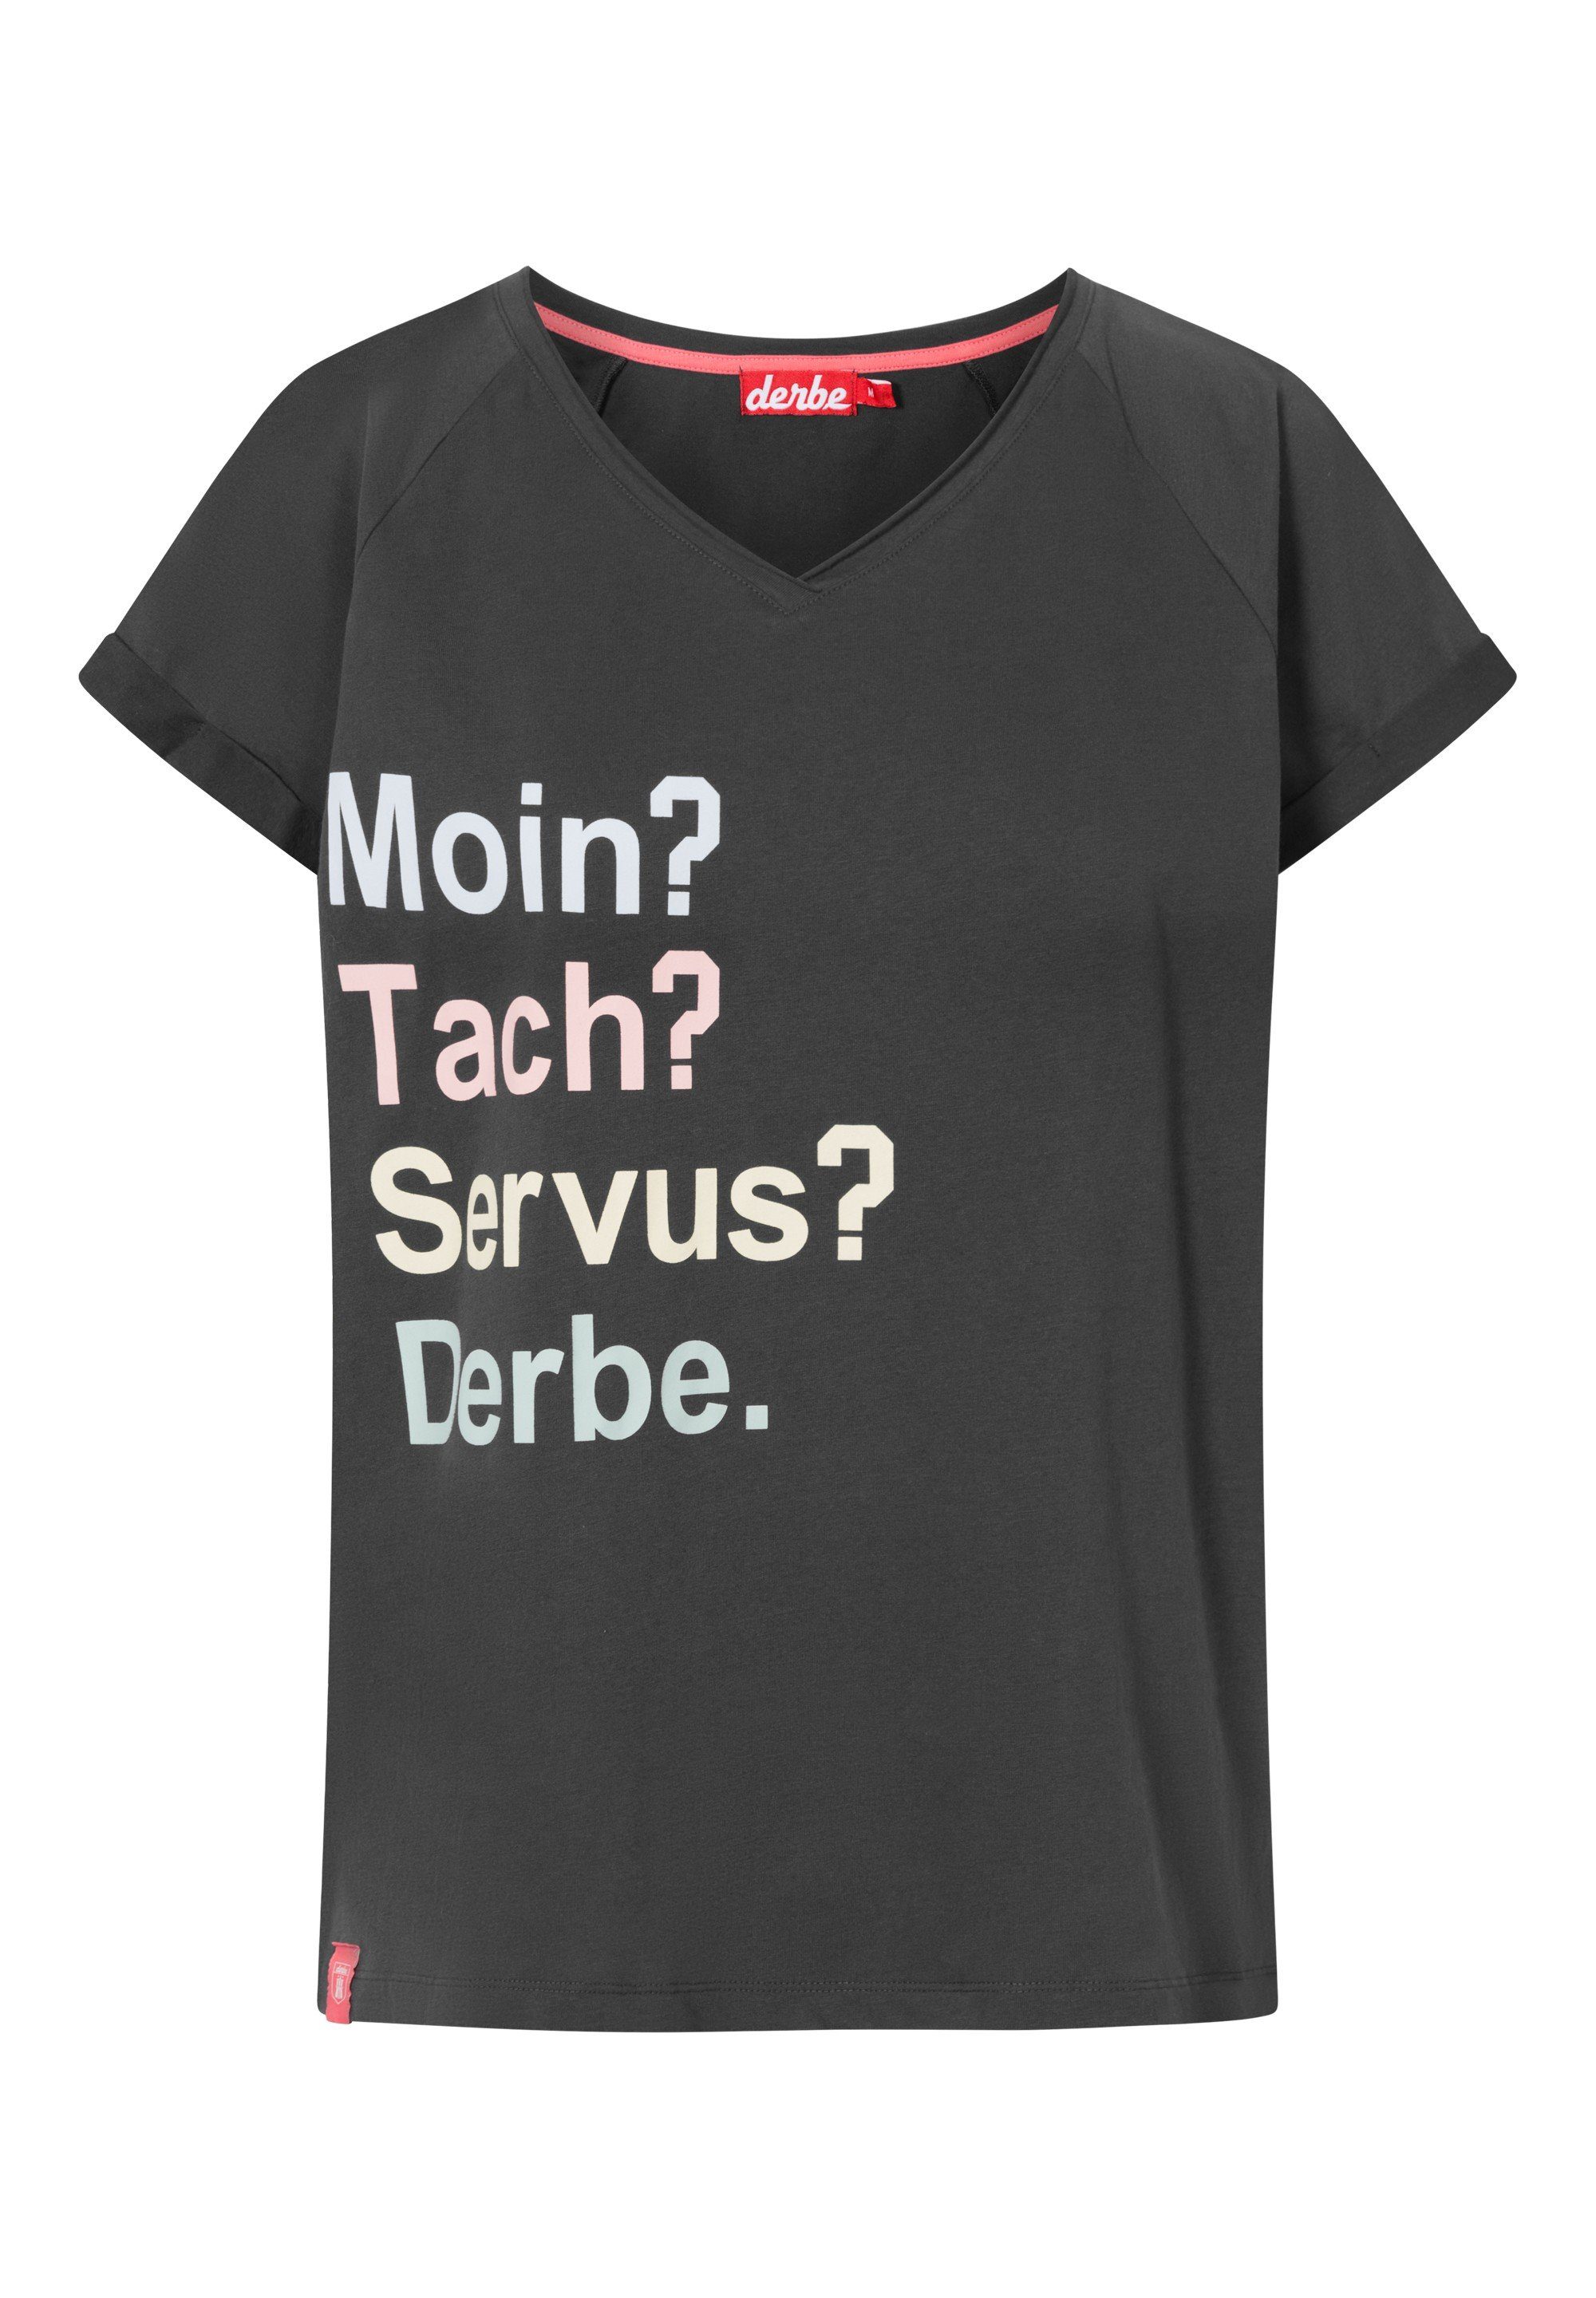 Derbe T-Shirt T-Shirt MoinTachServus Women